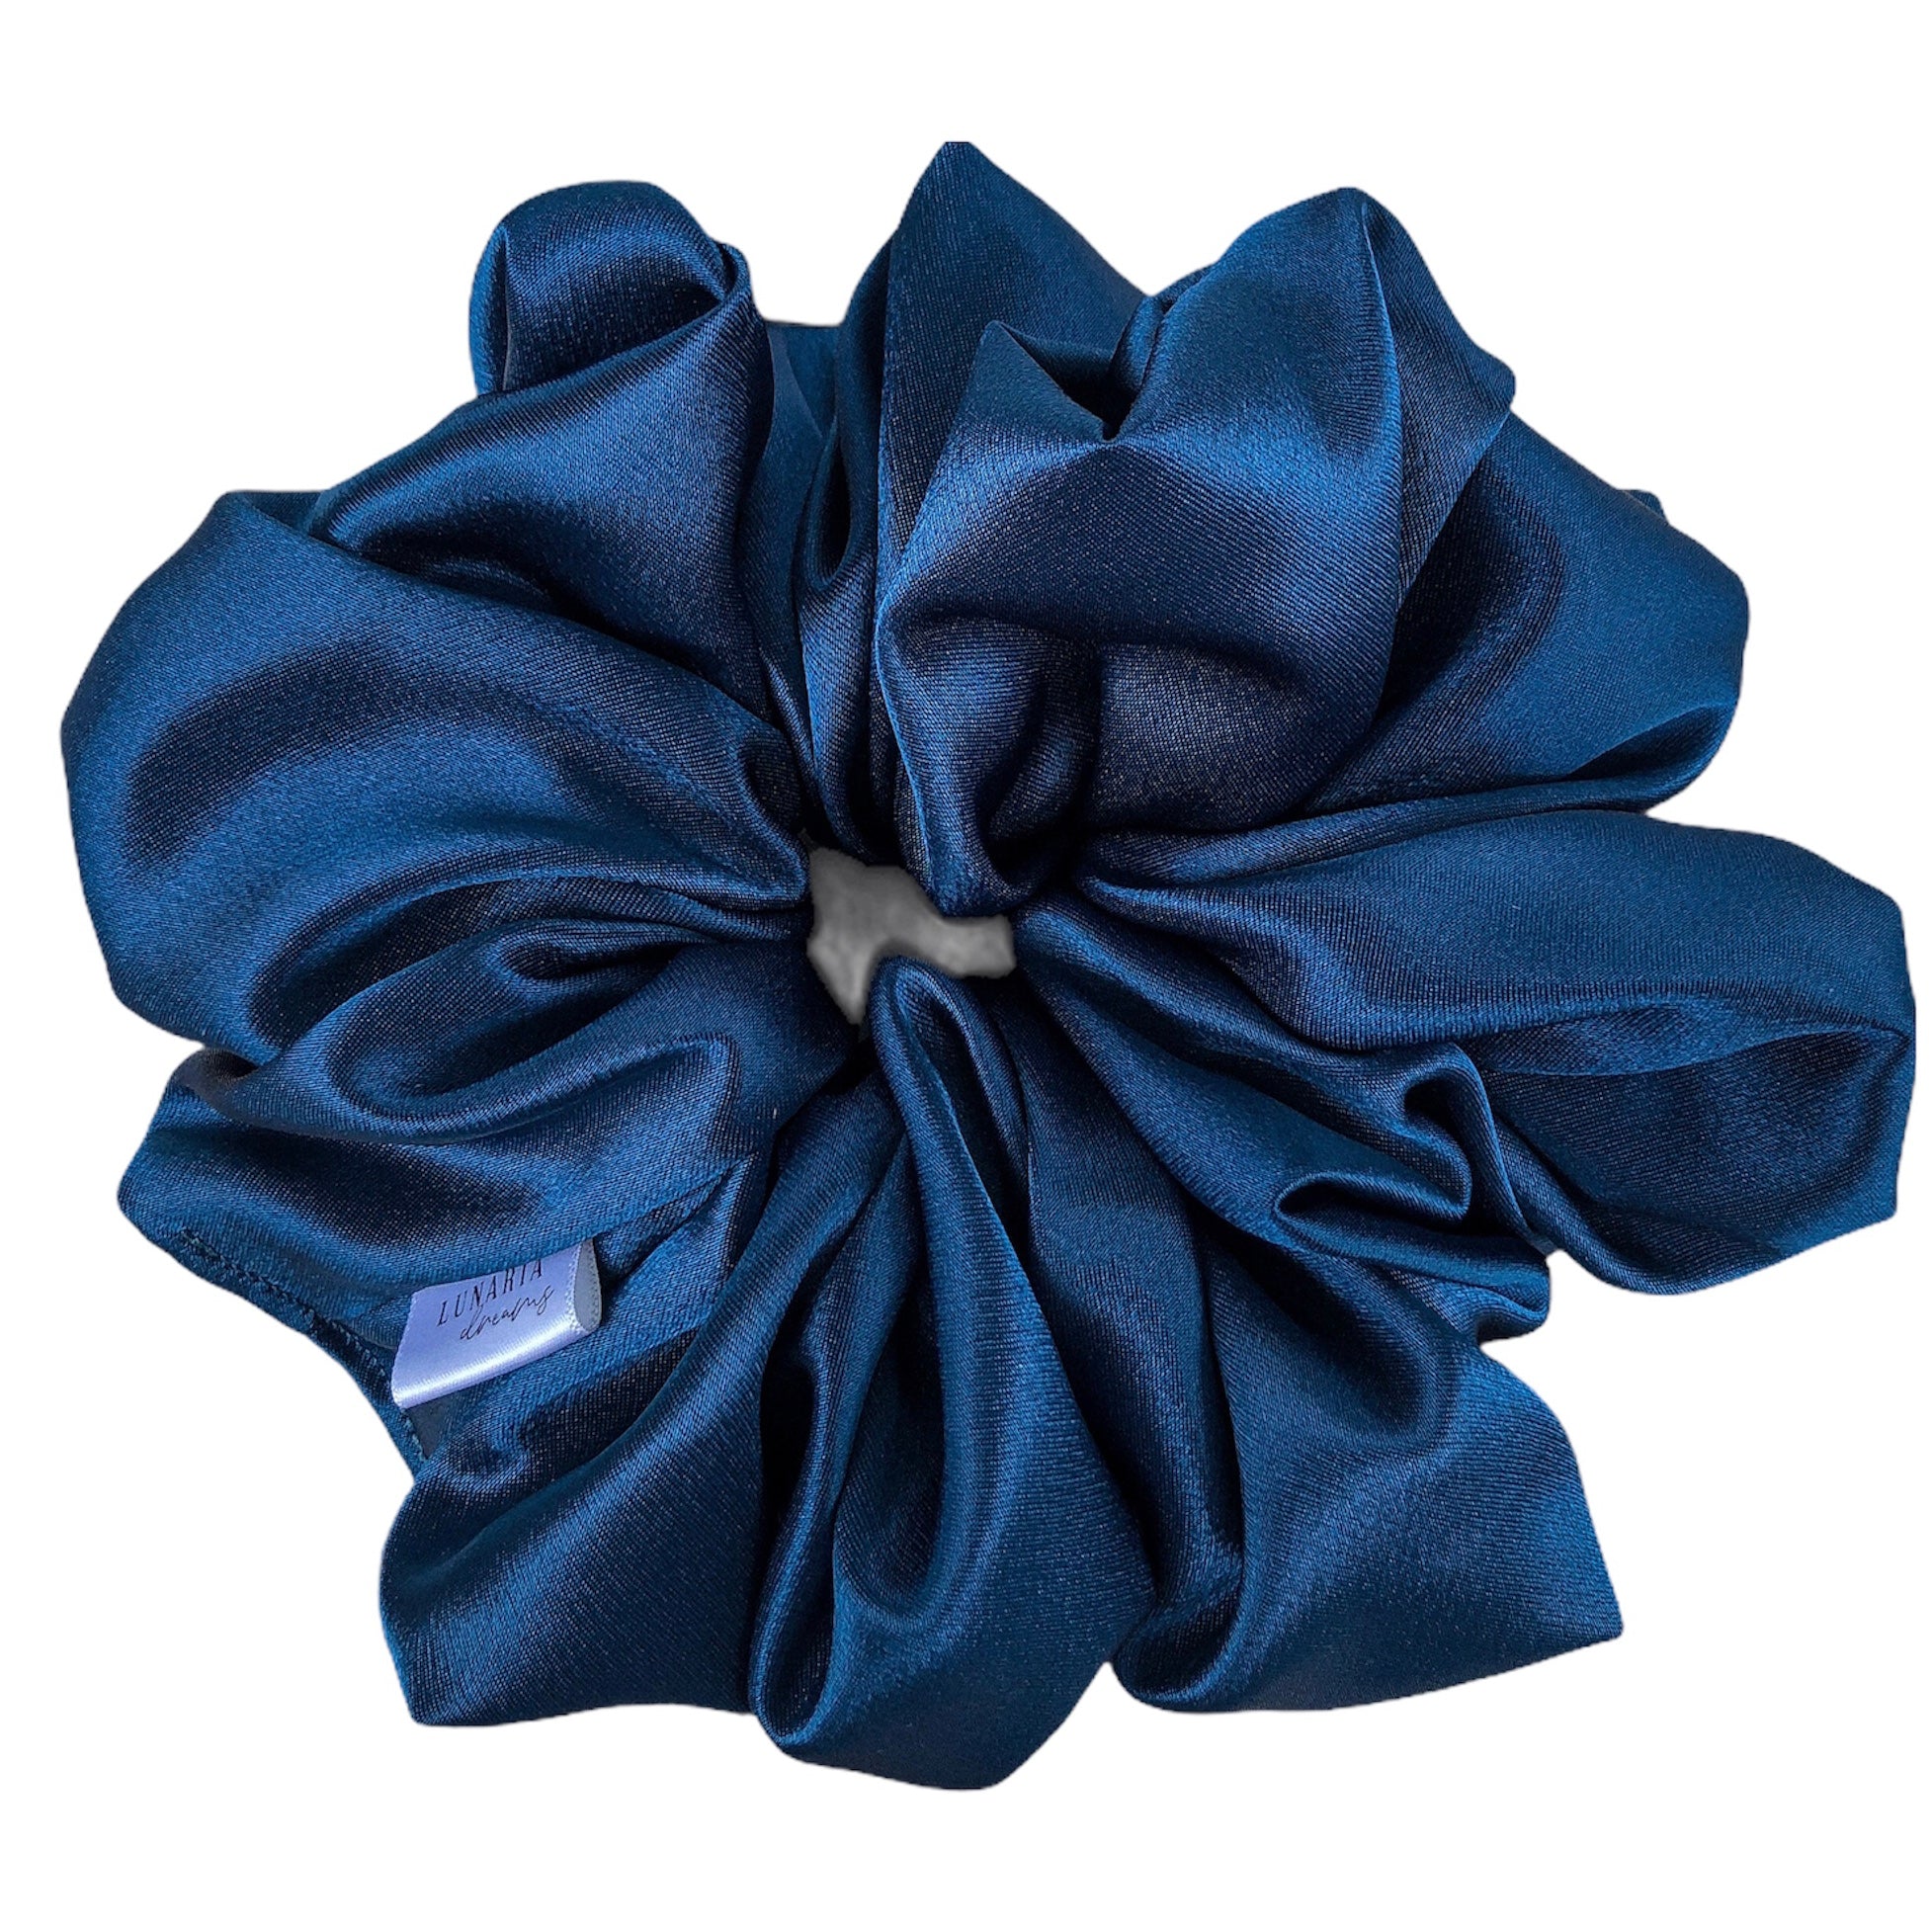 Oversized Celestial Scrunchie. An XL, extra luxe deep teal blue satin scrunchie.